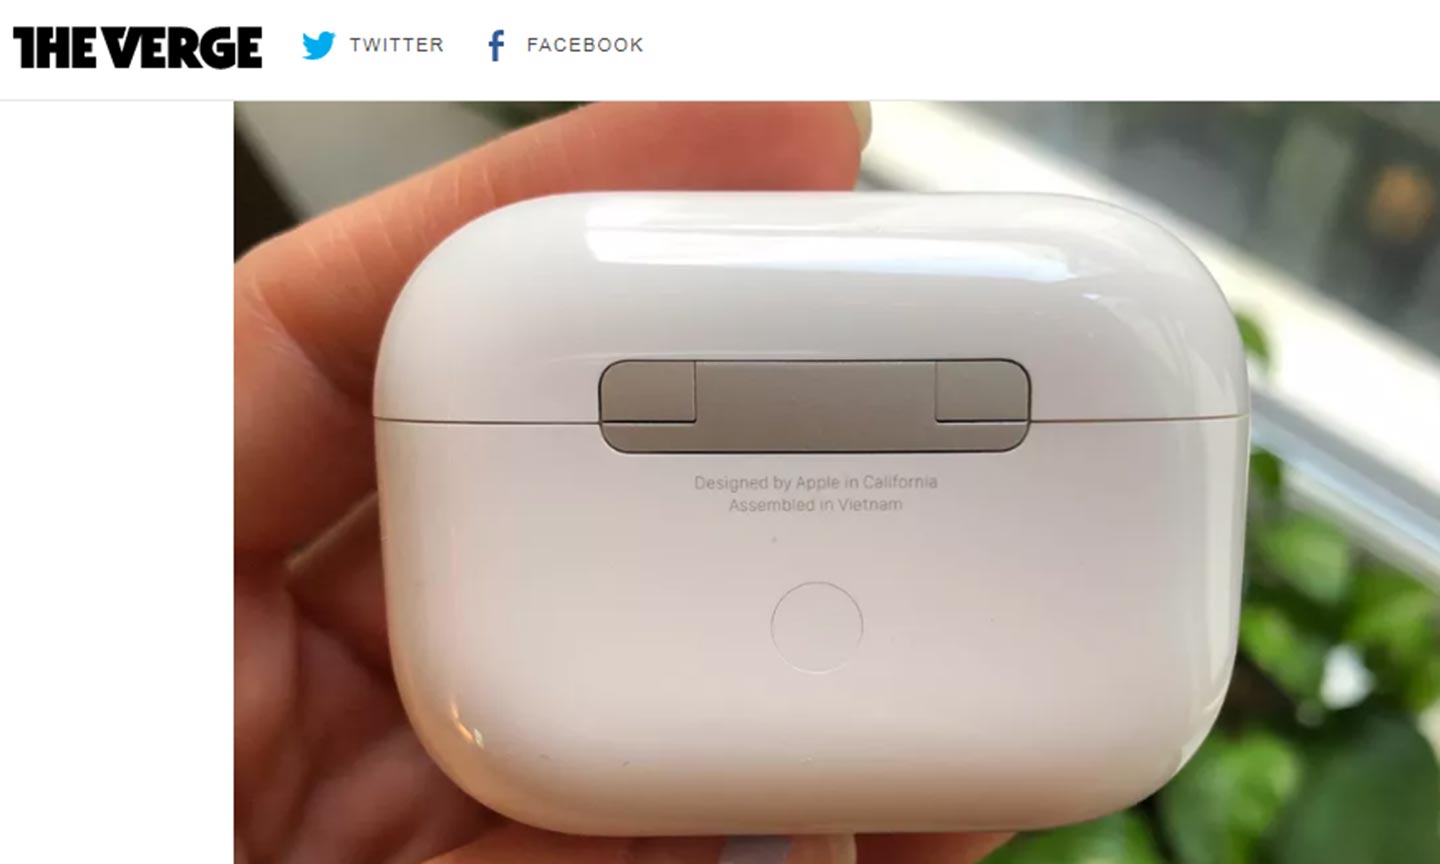 Tai nghe AirPods của Apple lắp ráp tại Việt Nam. Ảnh: theverge.com